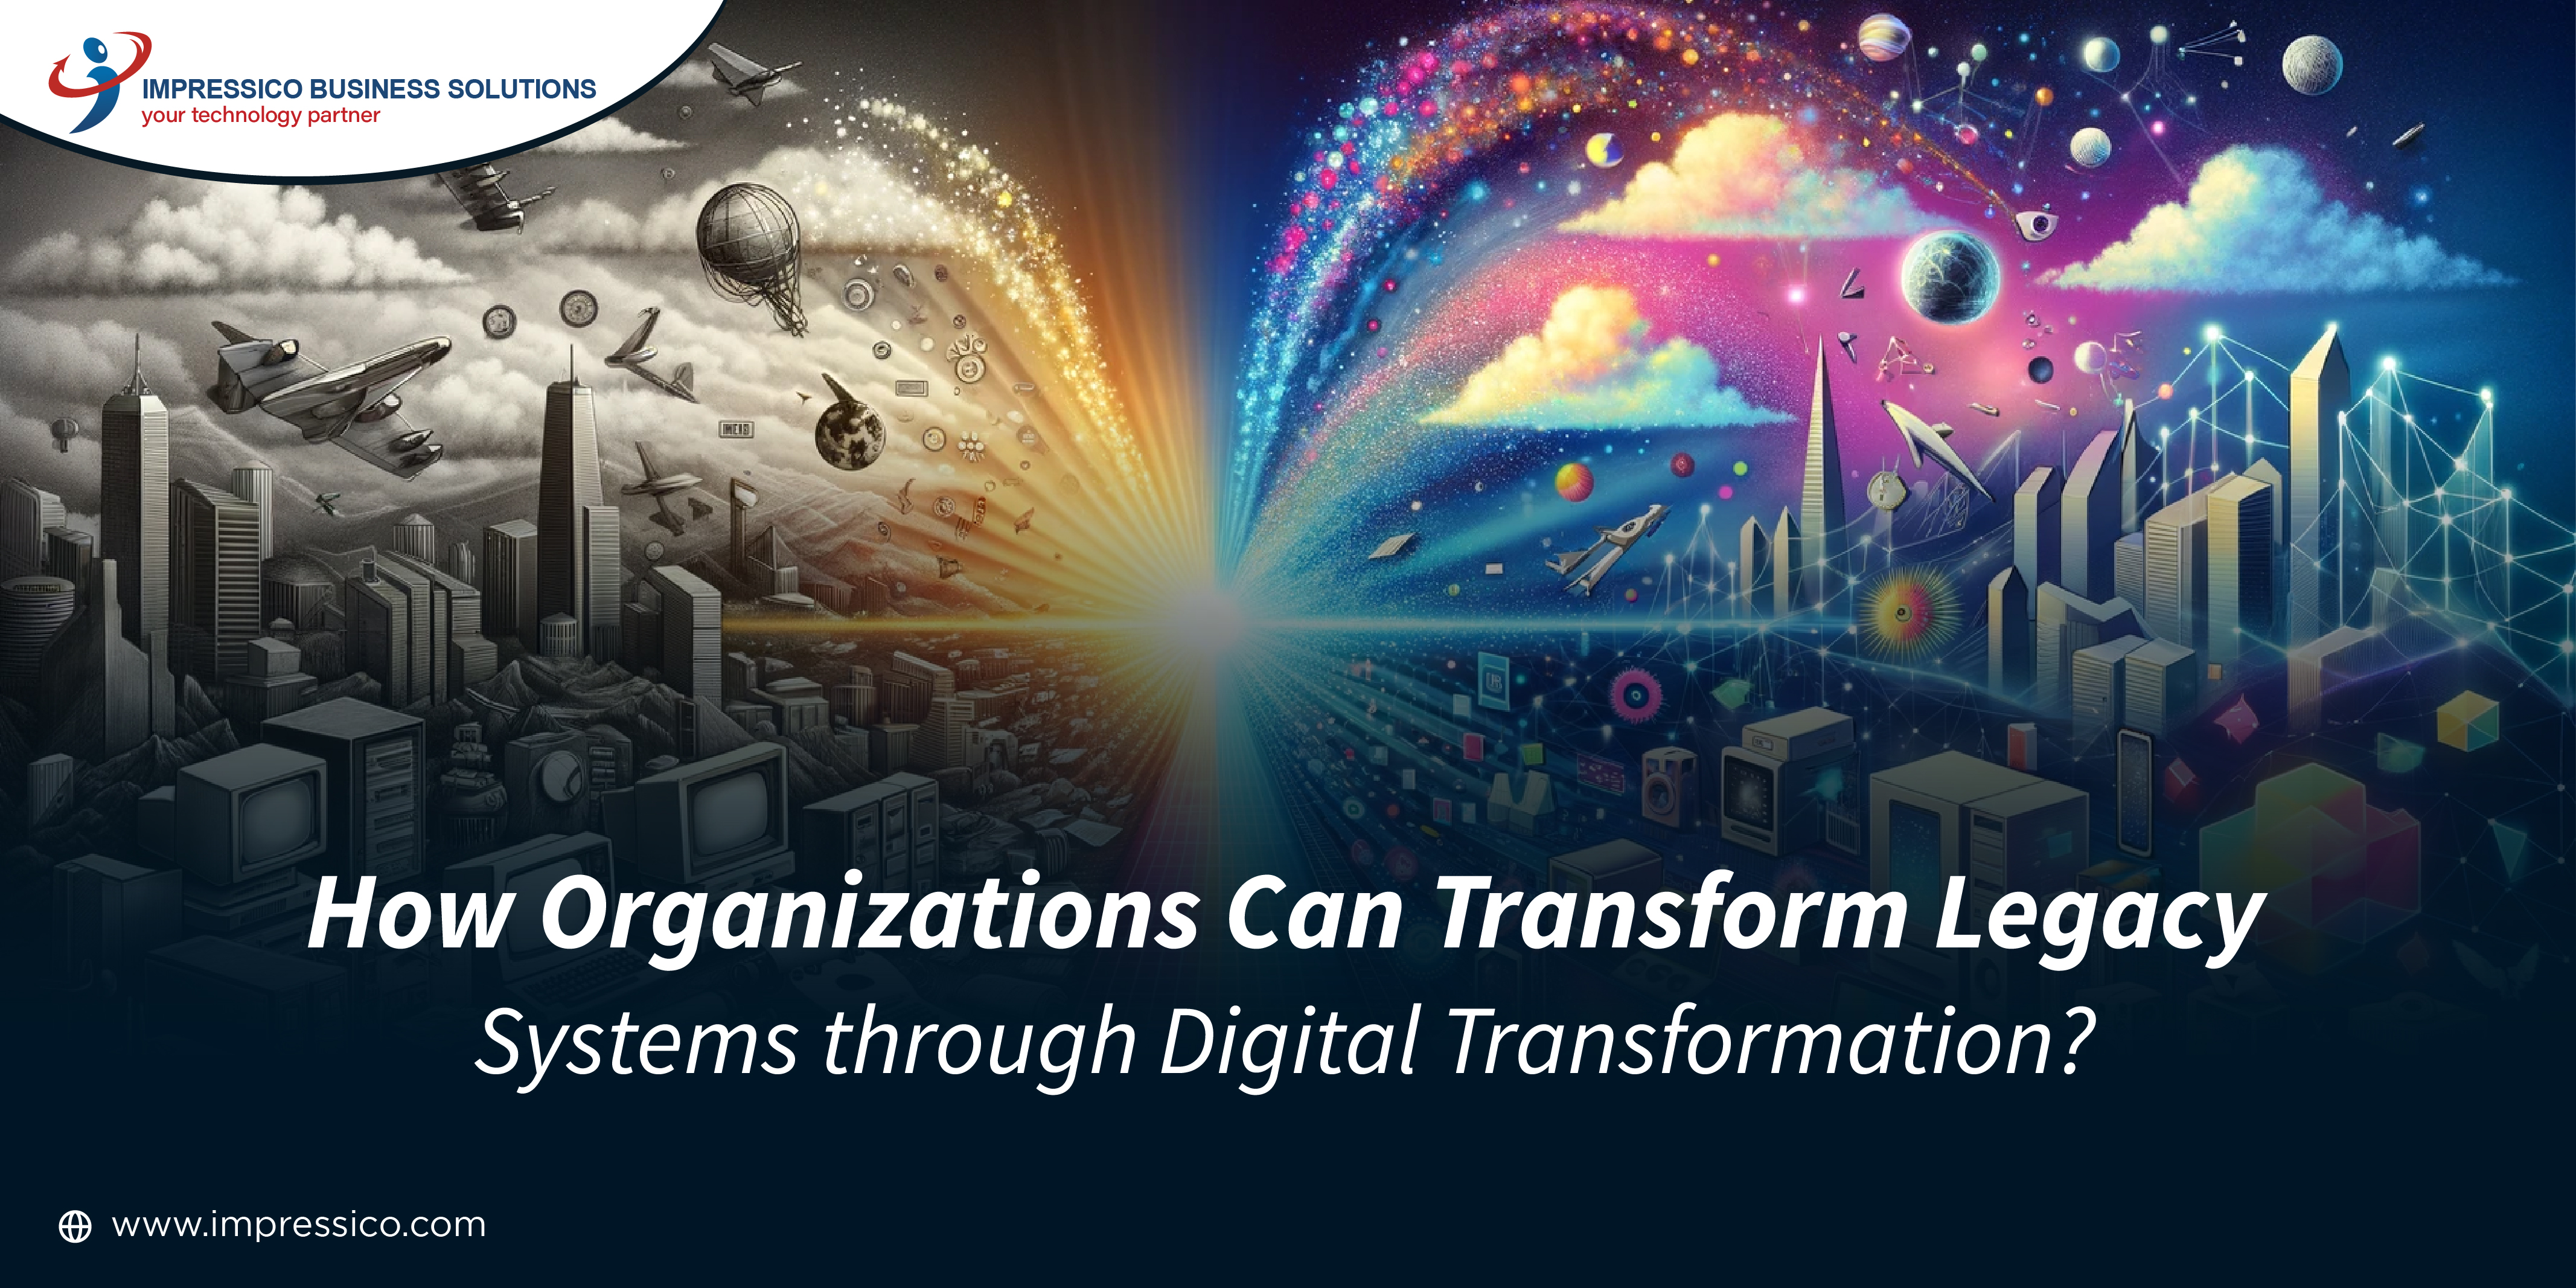 Legacy Systems through Digital Transformation